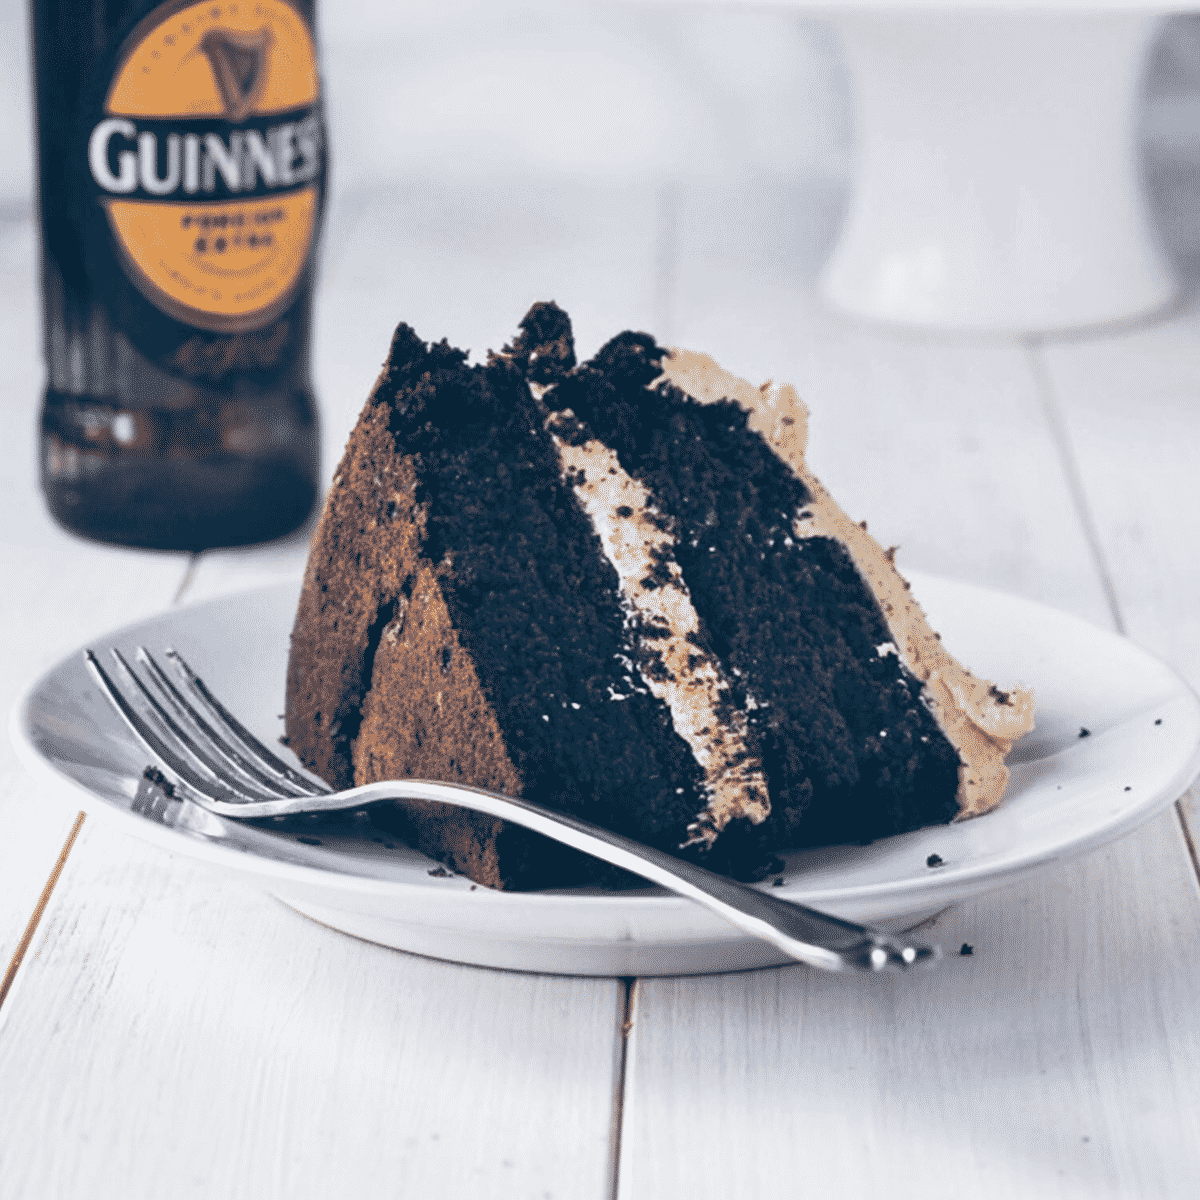 Vegan Guinness Chocolate Cake with Irish Cream Frosting